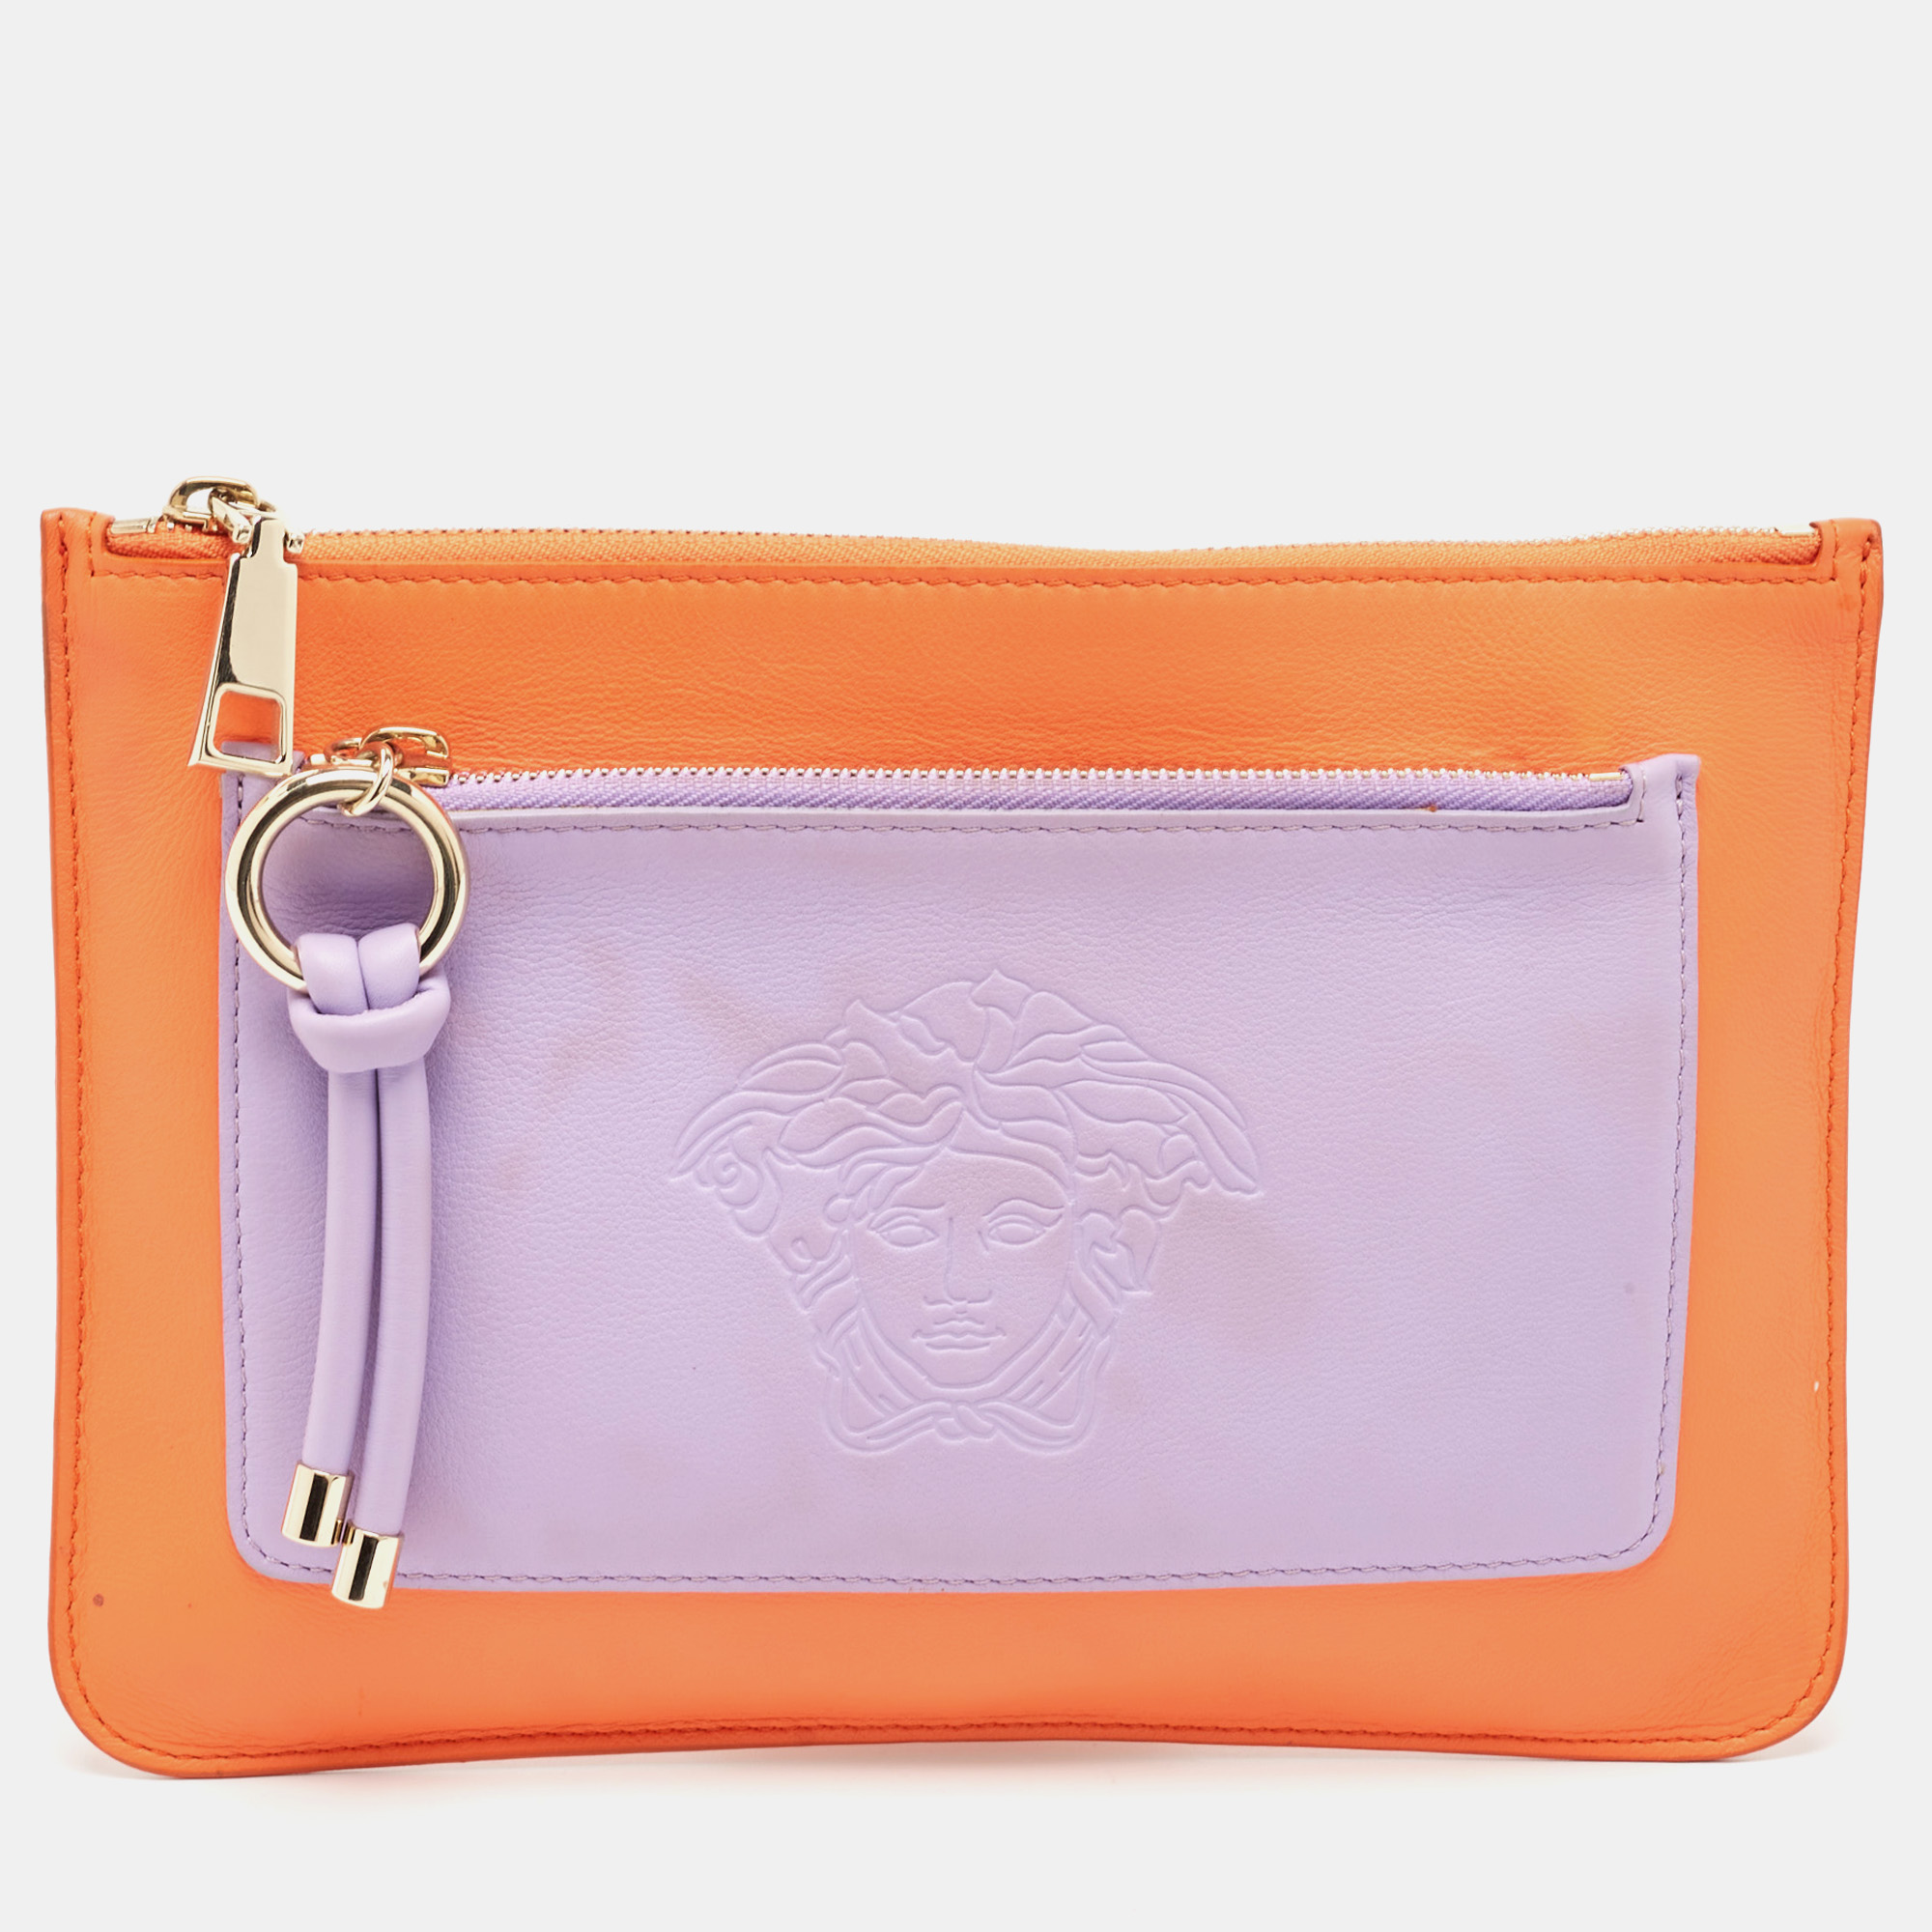 

Versace Orange/Purple Leather Medusa Embossed Slim Clutch